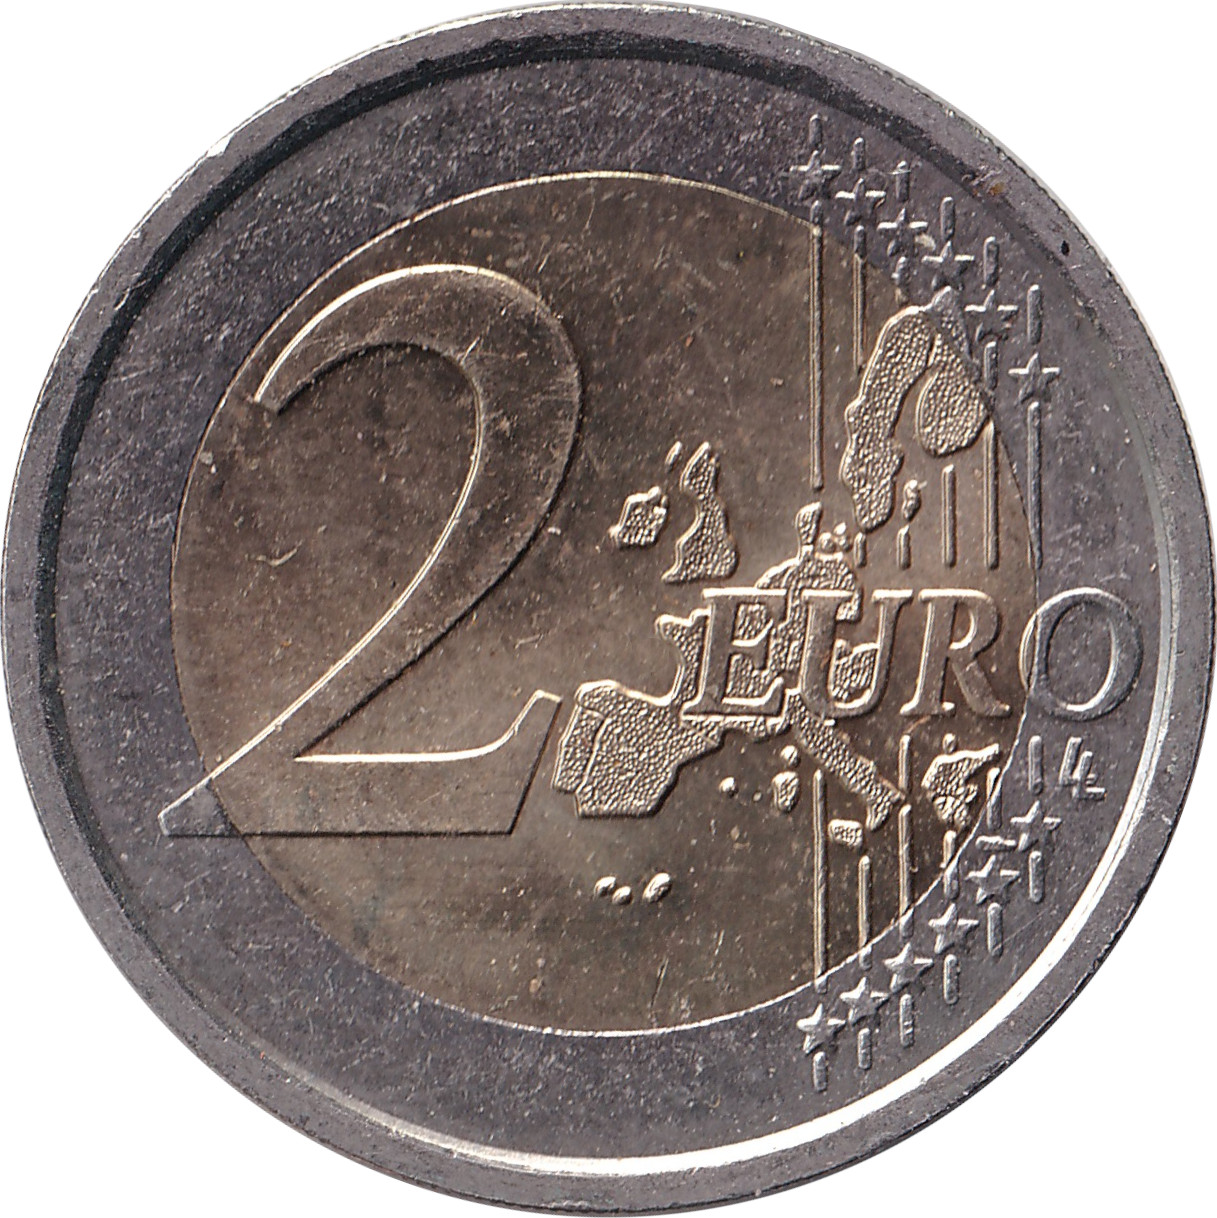 2 euro - Constitution européenne